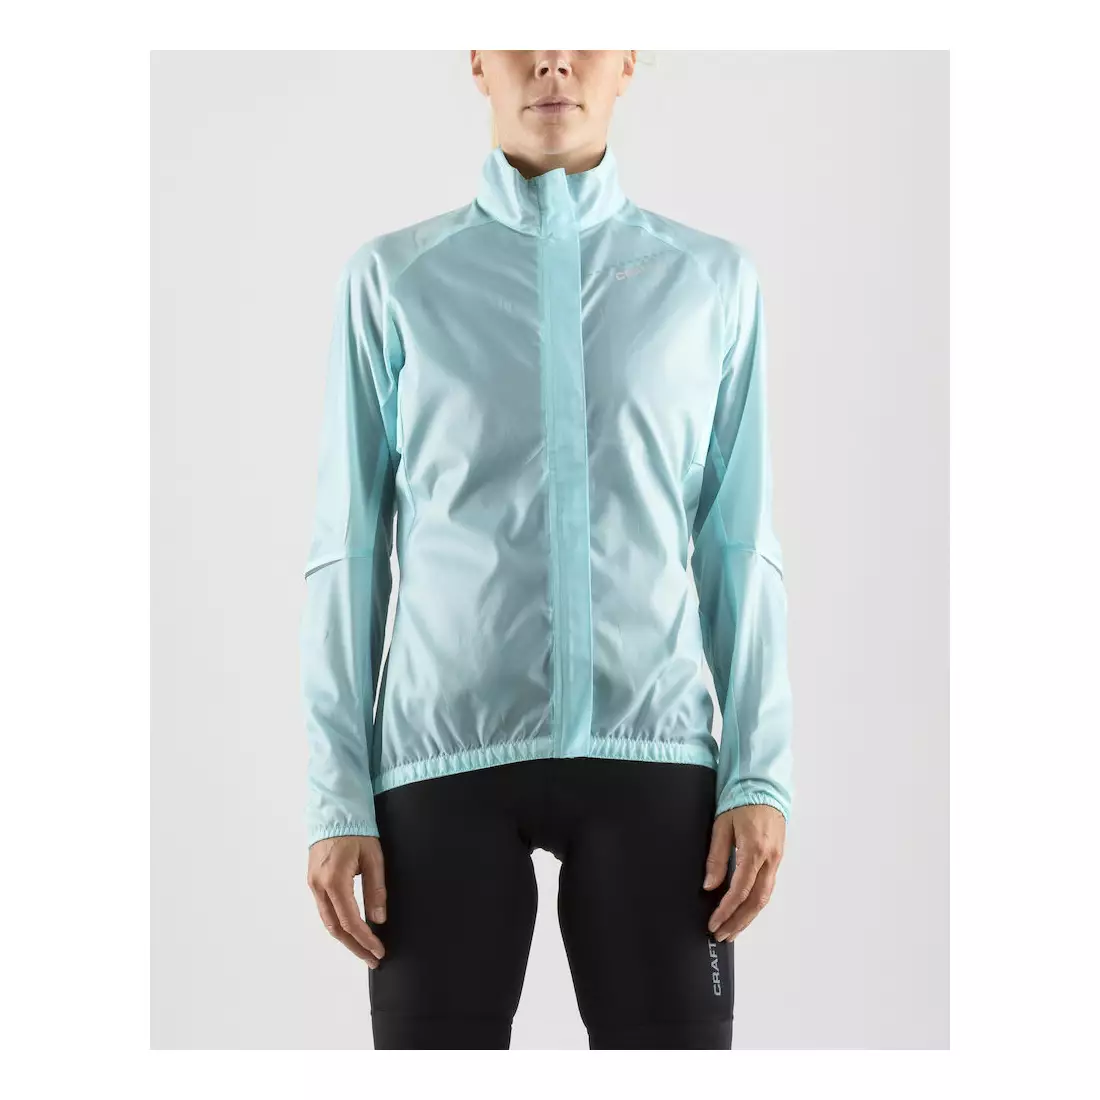 CRAFT Mist Wind JKT women's cycling jacket, windbreaker 1906073-619610